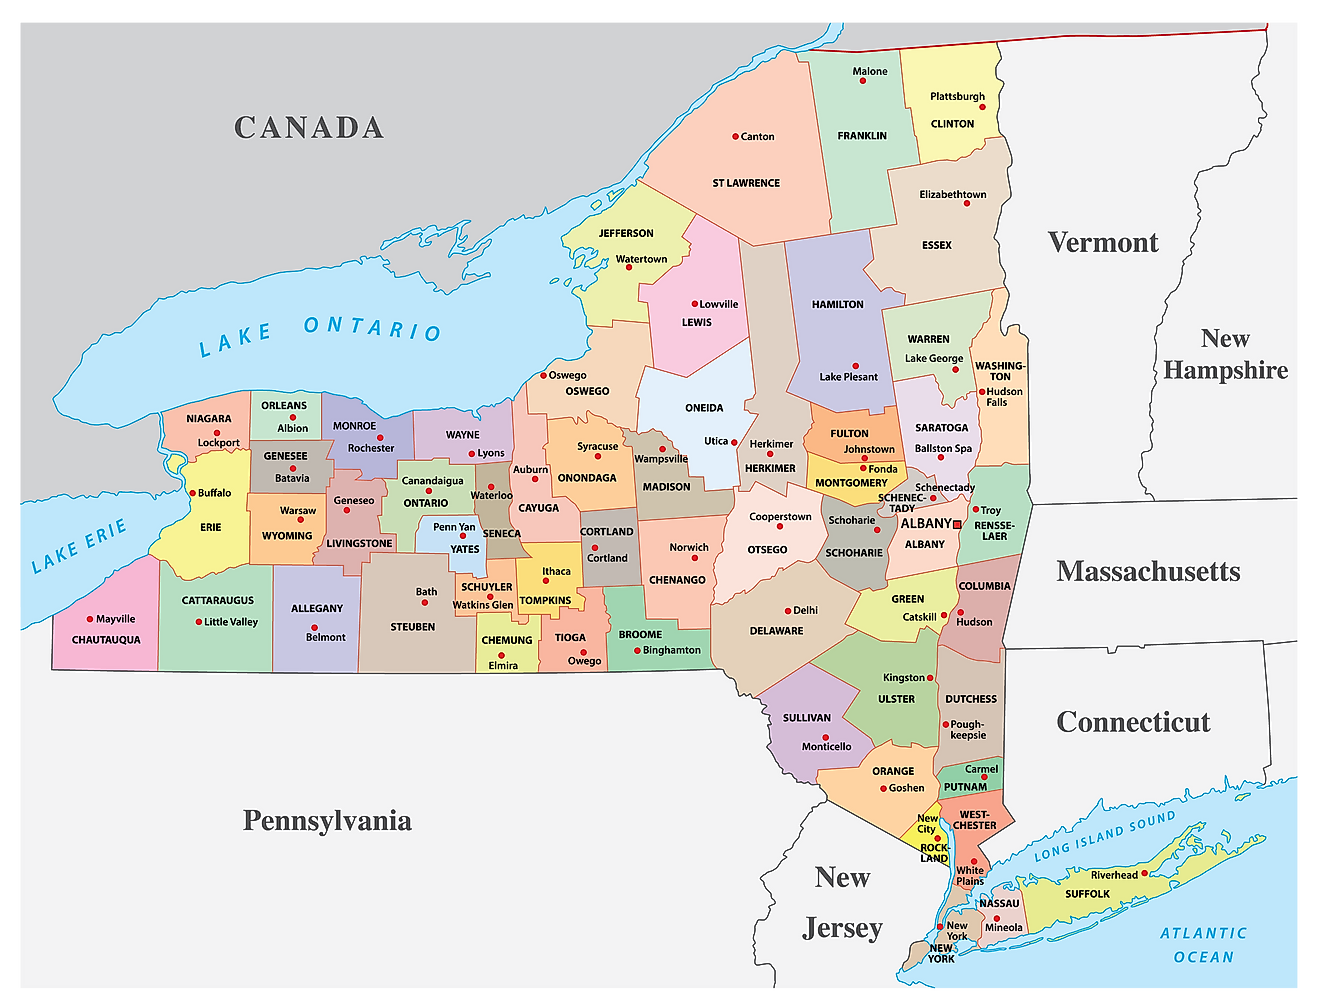 Mapa administrativo de Nueva York que muestra sus 62 condados y la ciudad capital - Albany